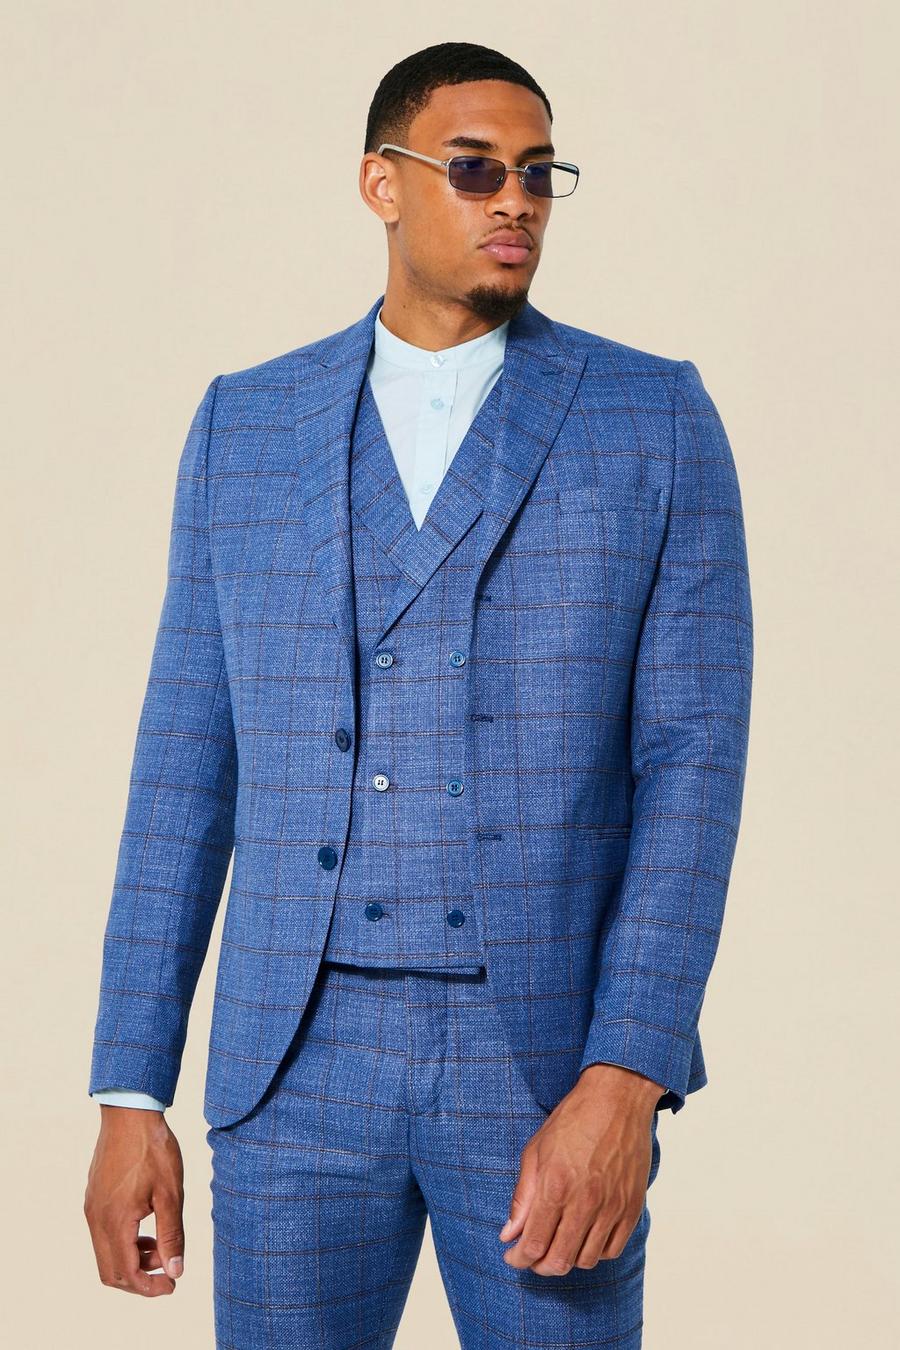 כחול azzurro ז'קט חליפה בגזרה צרה עם הדפס משבצות ודש אחד לגברים גבוהים